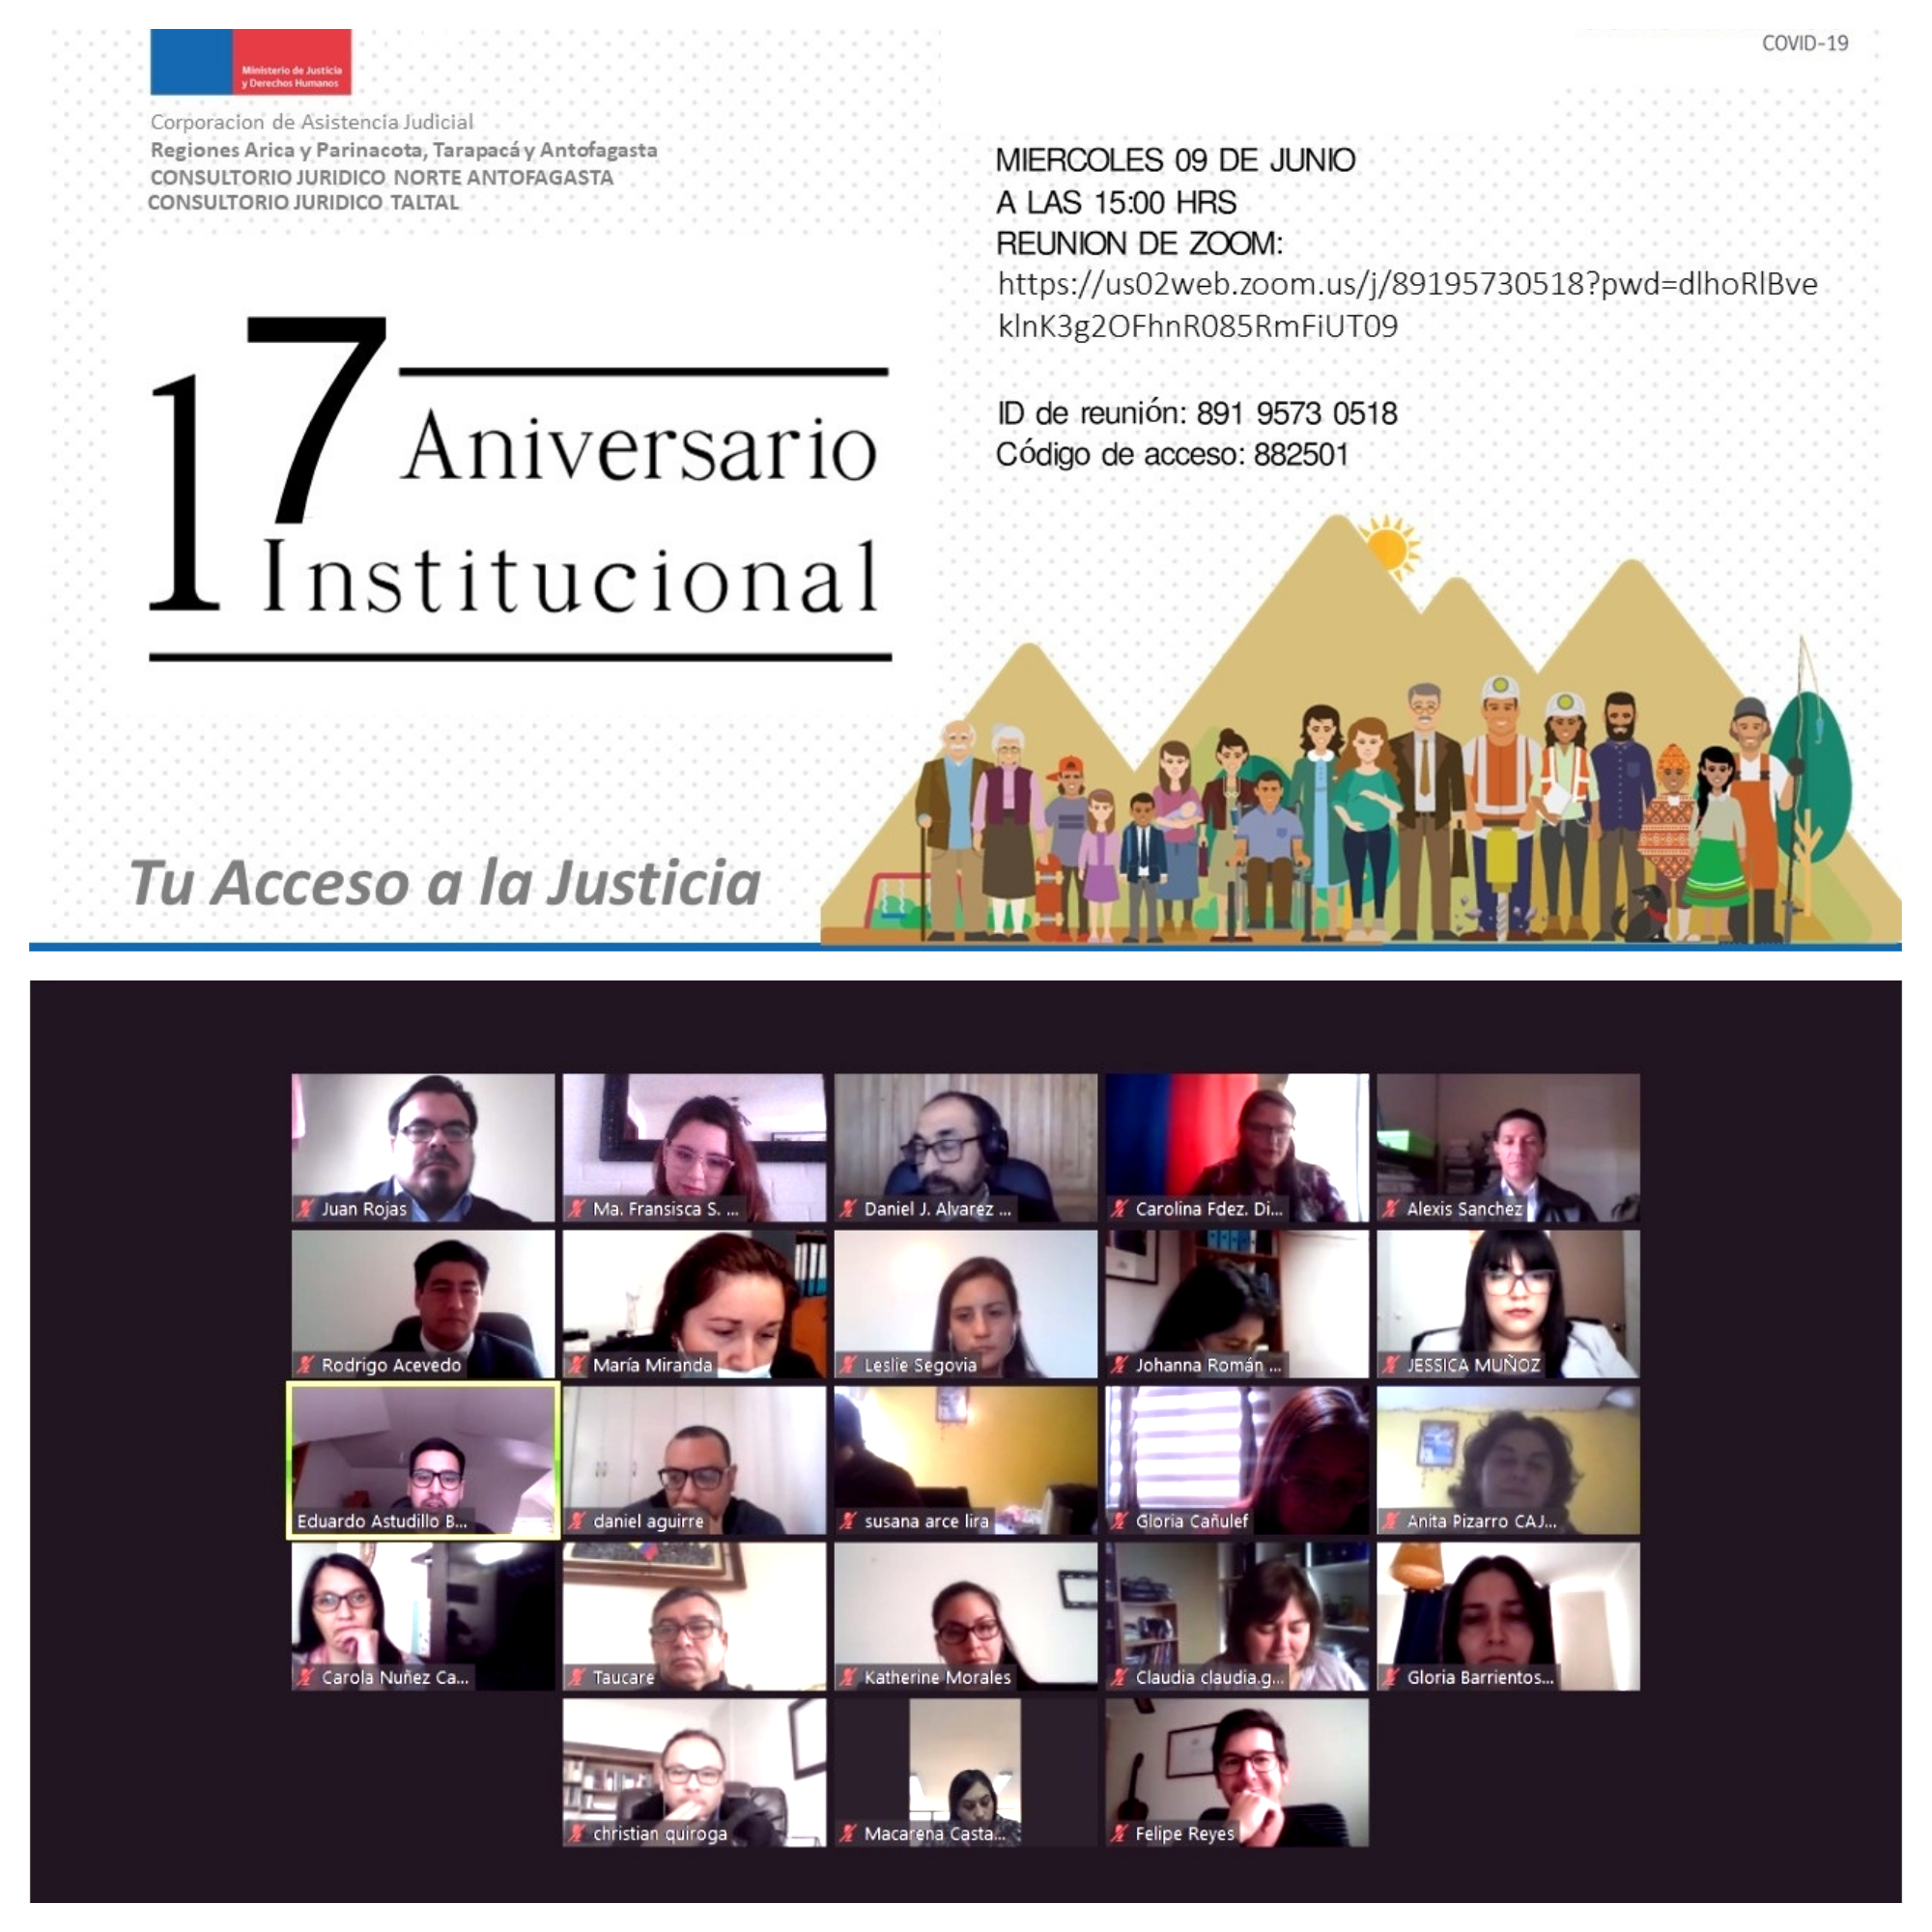 Aniversario Institucional N° 17 de los Consultorios Jurídicos Antofagasta Norte y Taltal